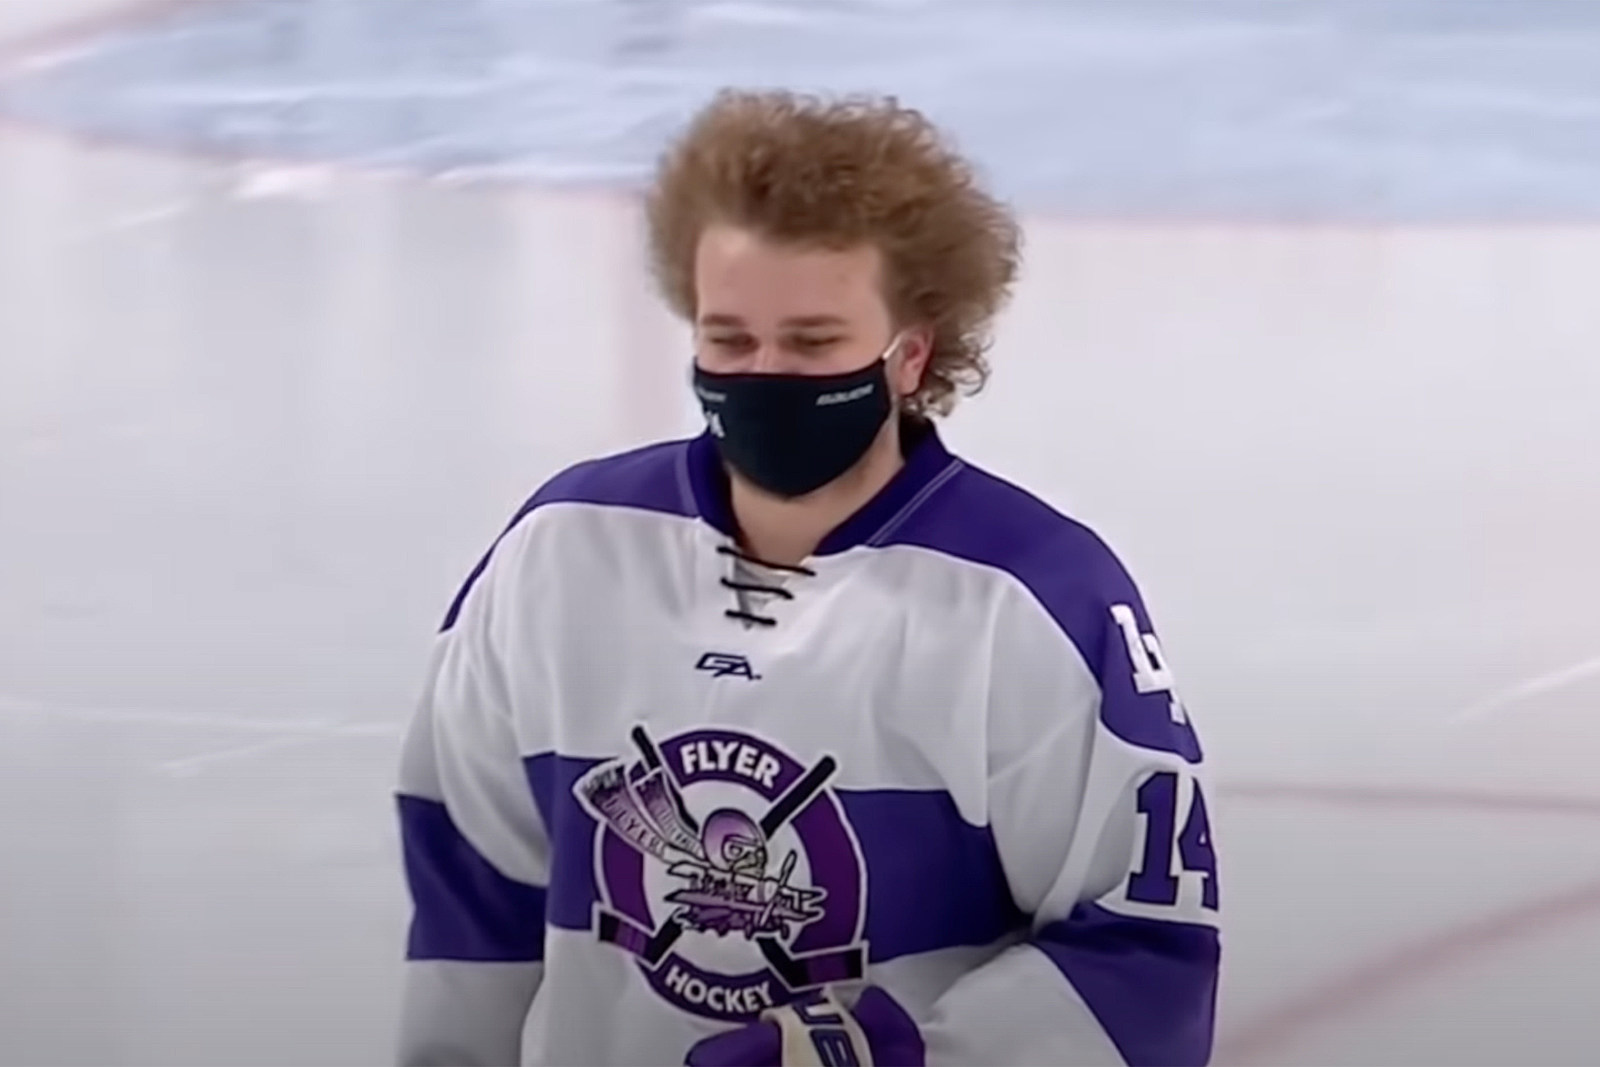 ESPN Special to Spotlight Minnesota Hockey Hair [Preview]